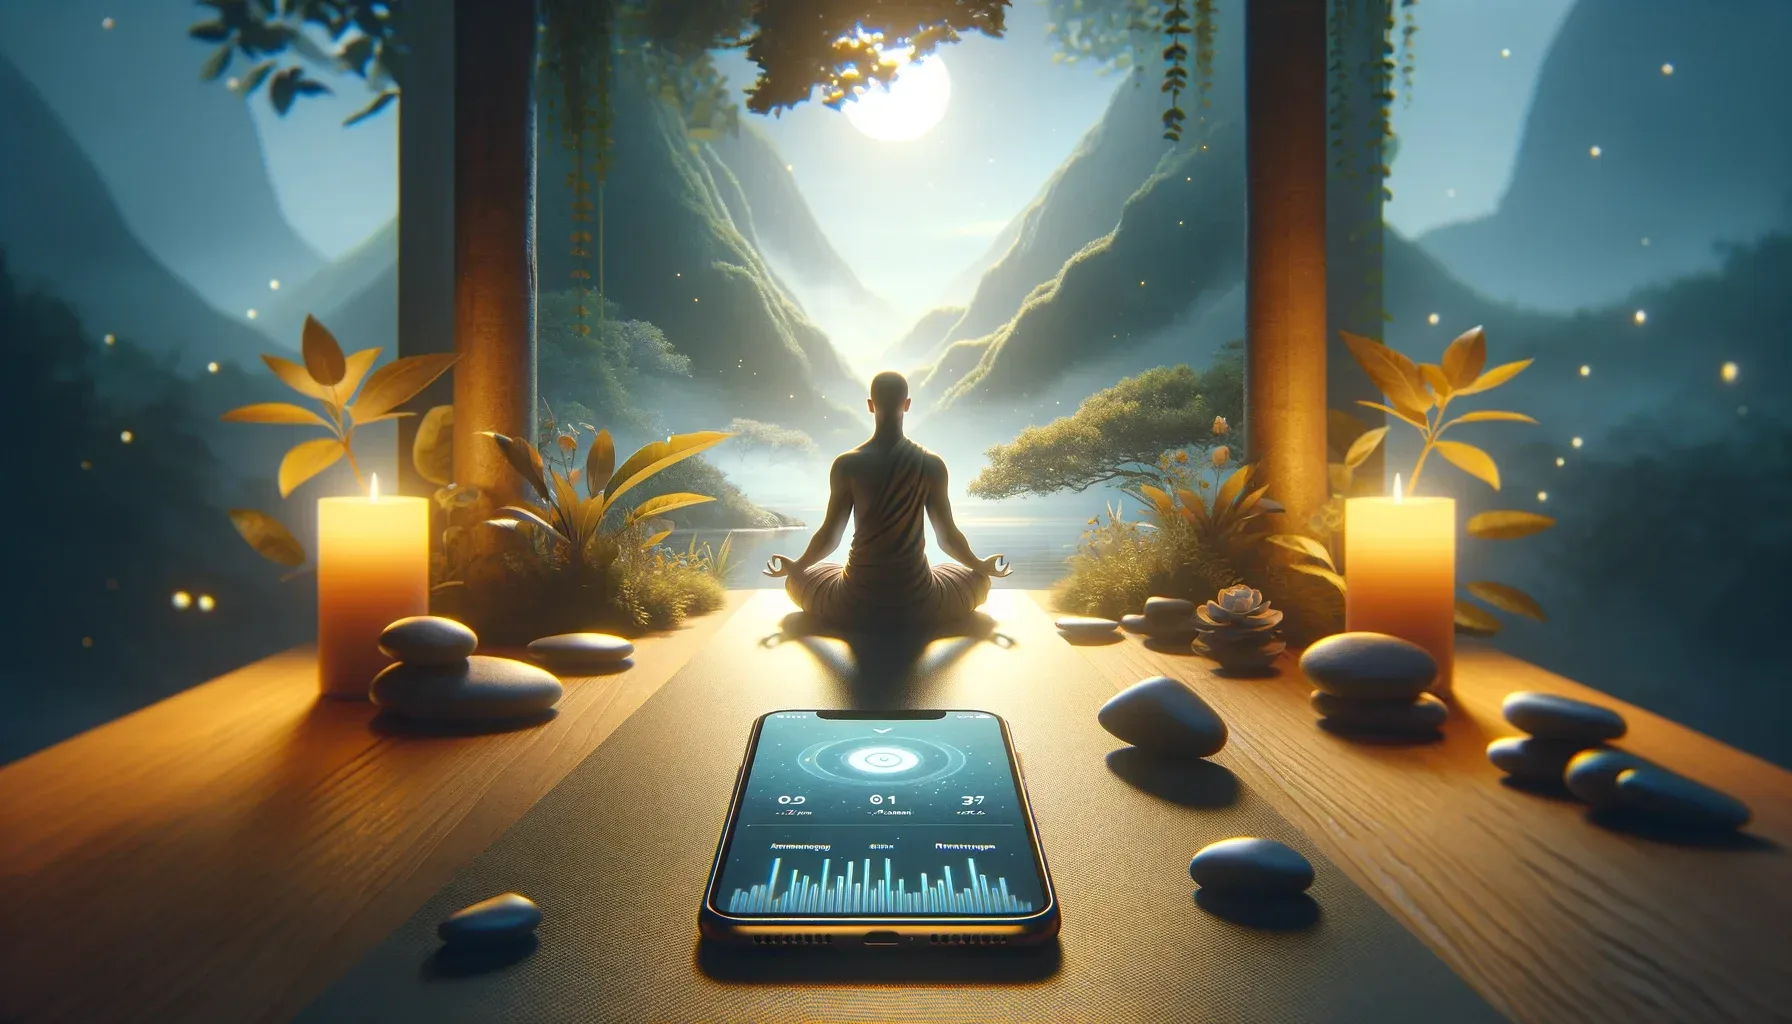 Descubra o poder da meditação com o Lojong APP